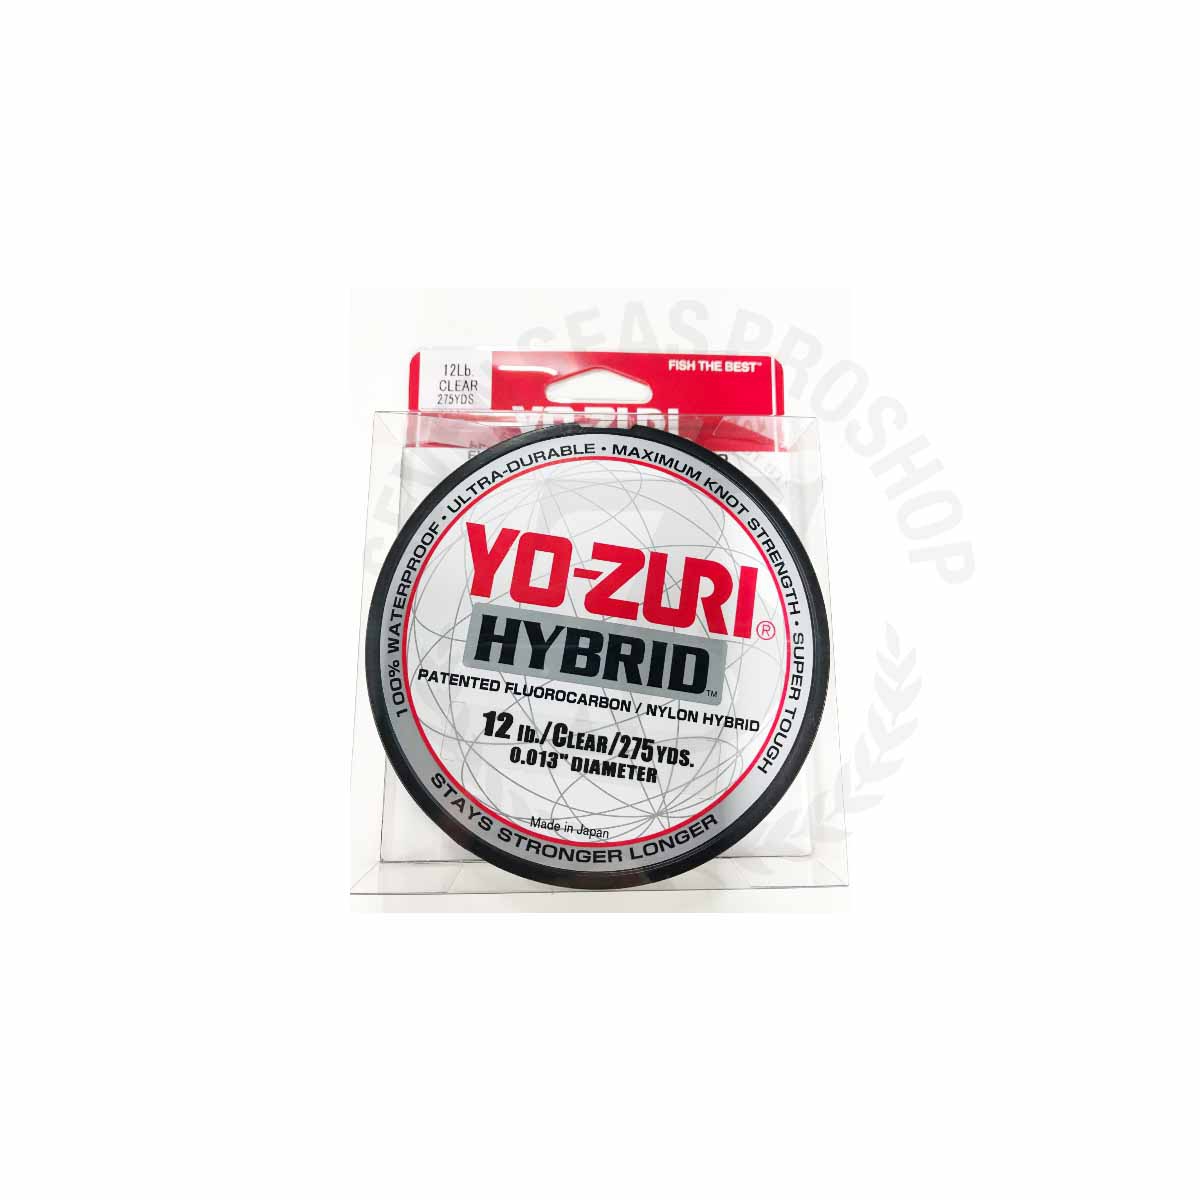 Yo-Zuri Hybrid 275Yd Clear #12lb*สายลีดฟลูออโรคาร์บอน - 7 SEAS